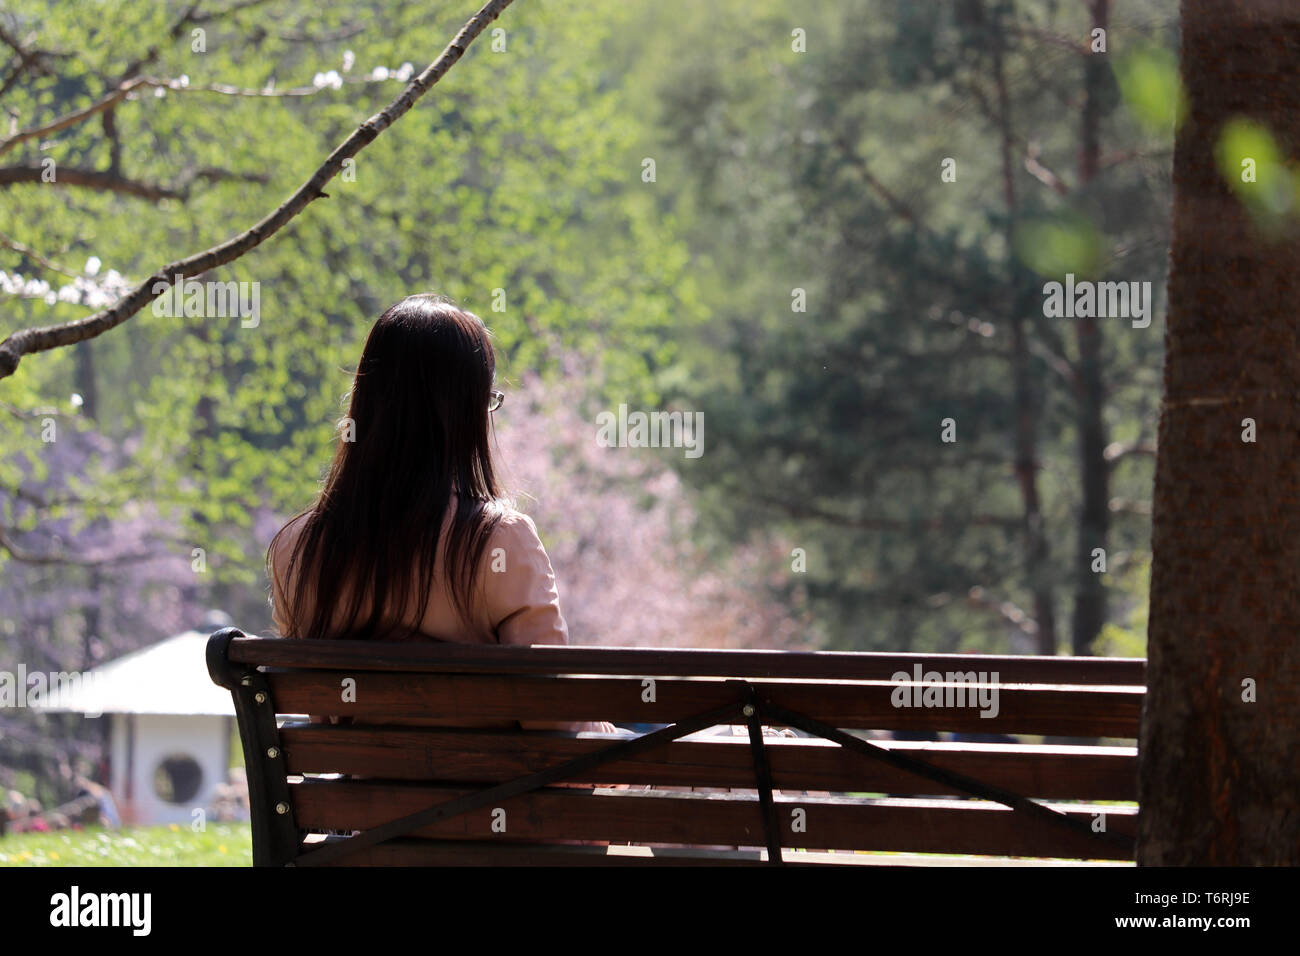 Ragazza con gli occhiali si siede su una panca di legno in una molla giardino giapponese durante la fioritura dei ciliegi stagione, in vista posteriore Concetto di sognare, umore romantico Foto Stock